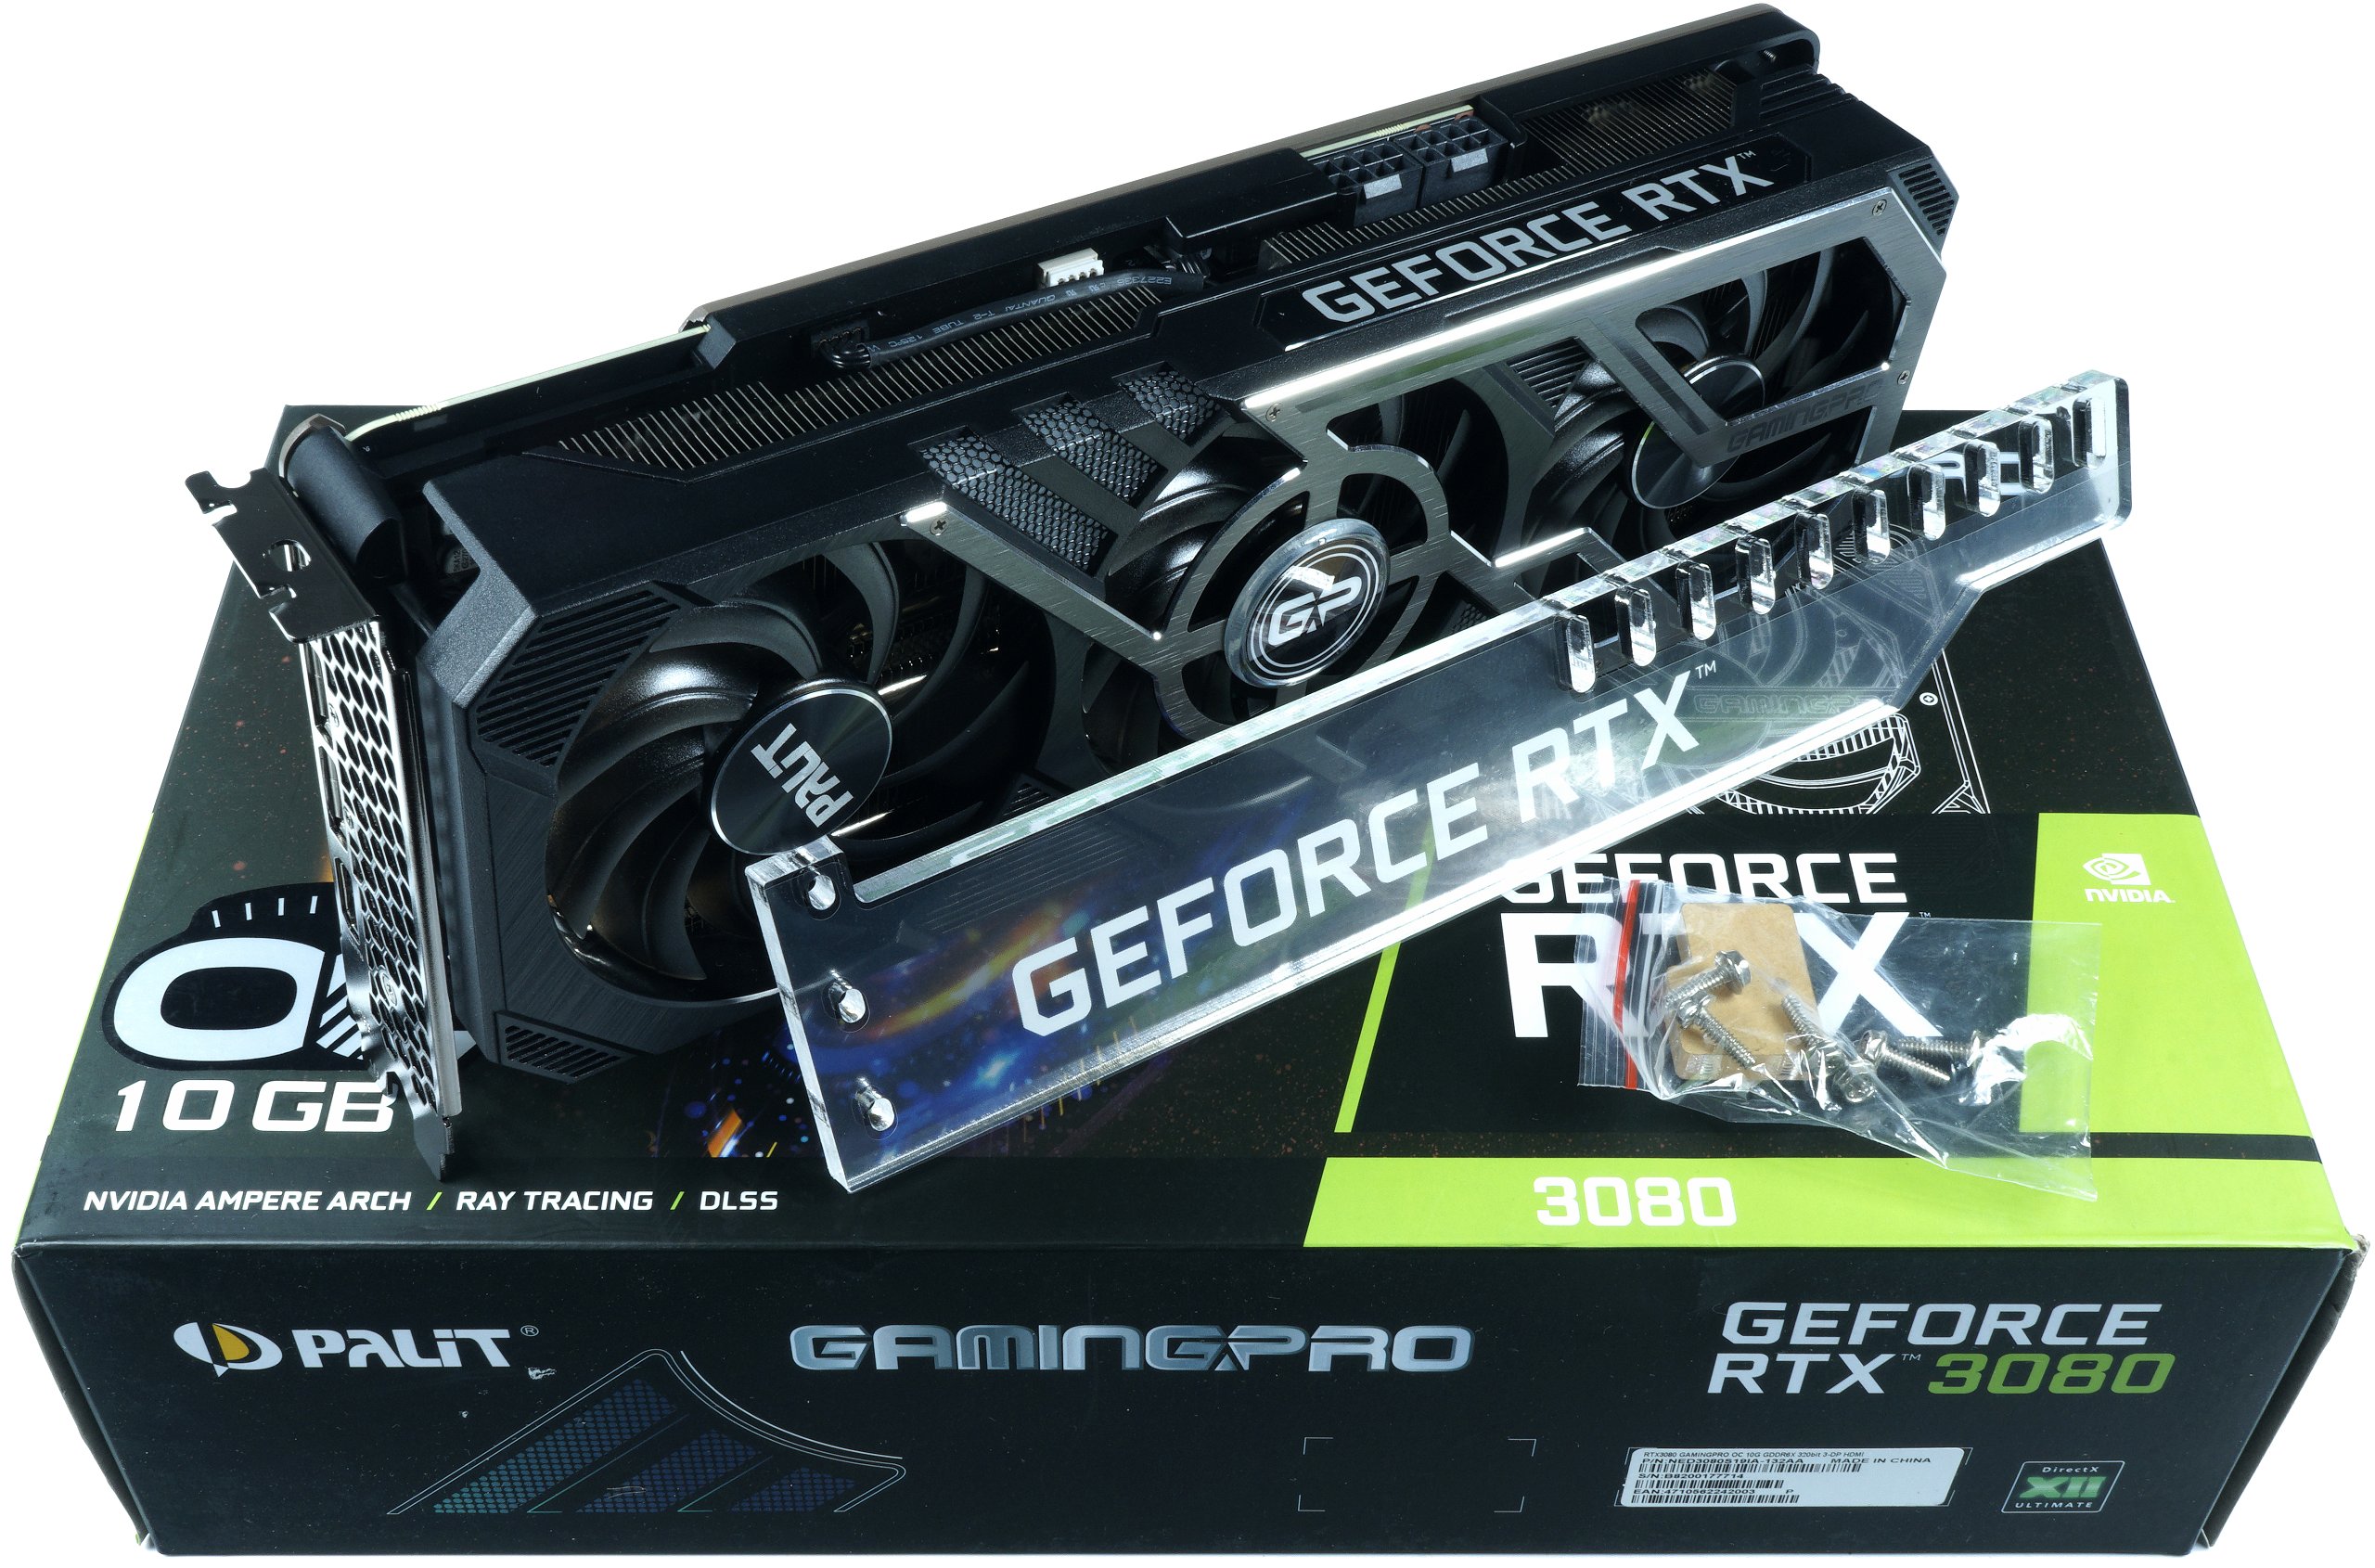 PALiT GAMINGPRO GeForce RTX 3080 non LHR